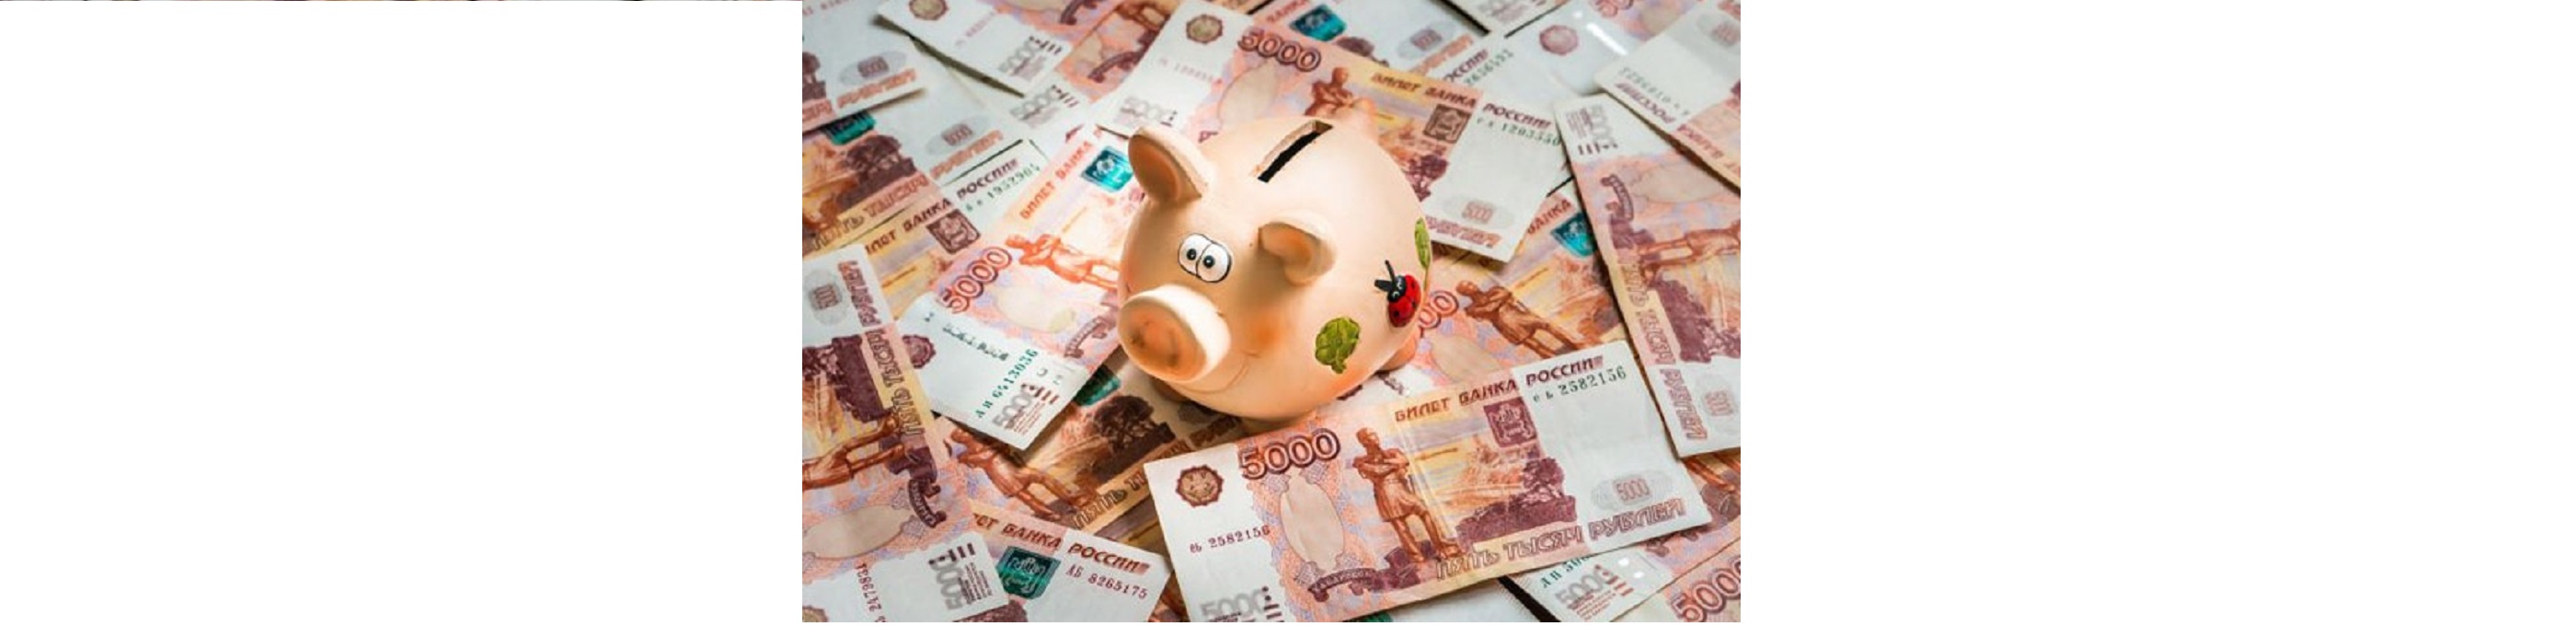 Российский финансовый рынок ожидает дальнейшее ослабление отечественной валюты, большинство экспертов рекомендуют населению хранить свои сбережения именно в рублях